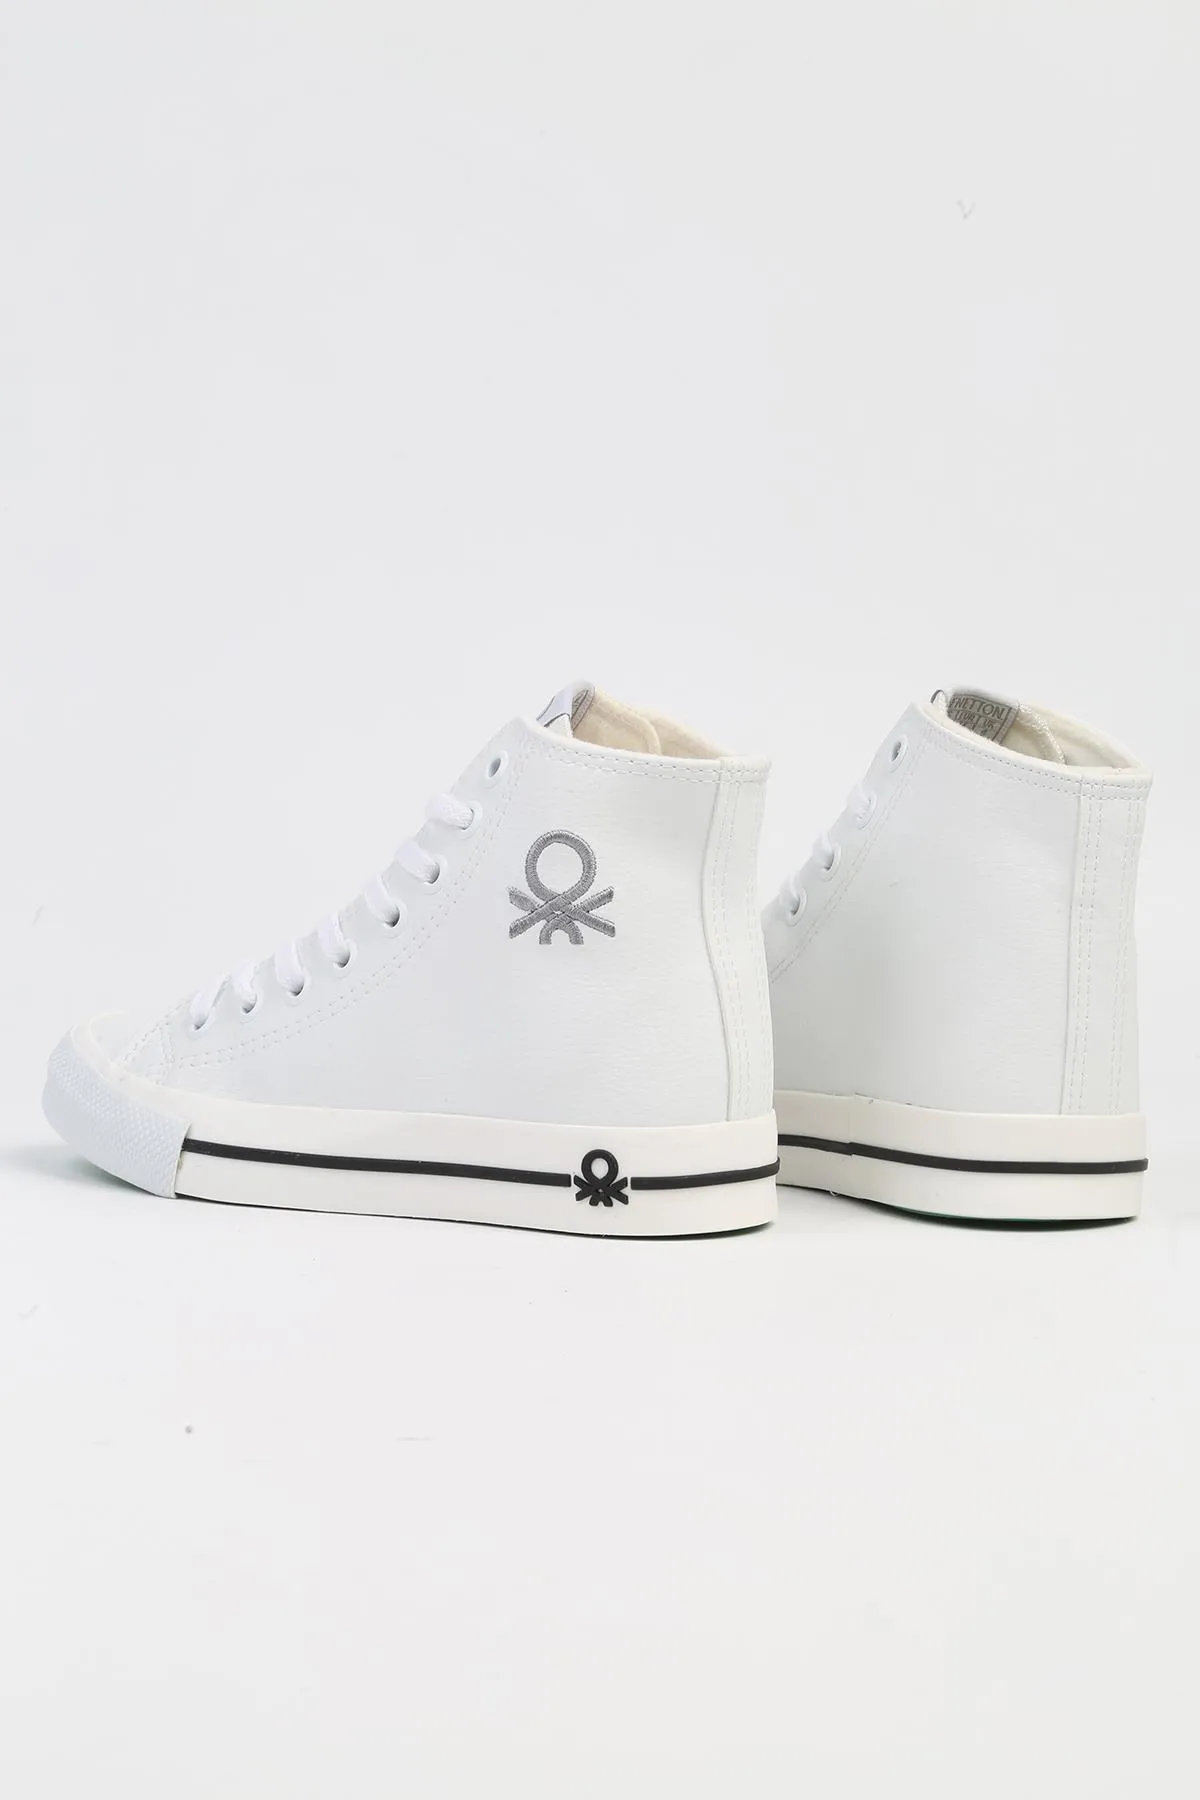 Kadın Spor Ayakkabı-BN-31052-Beyaz-Siyah